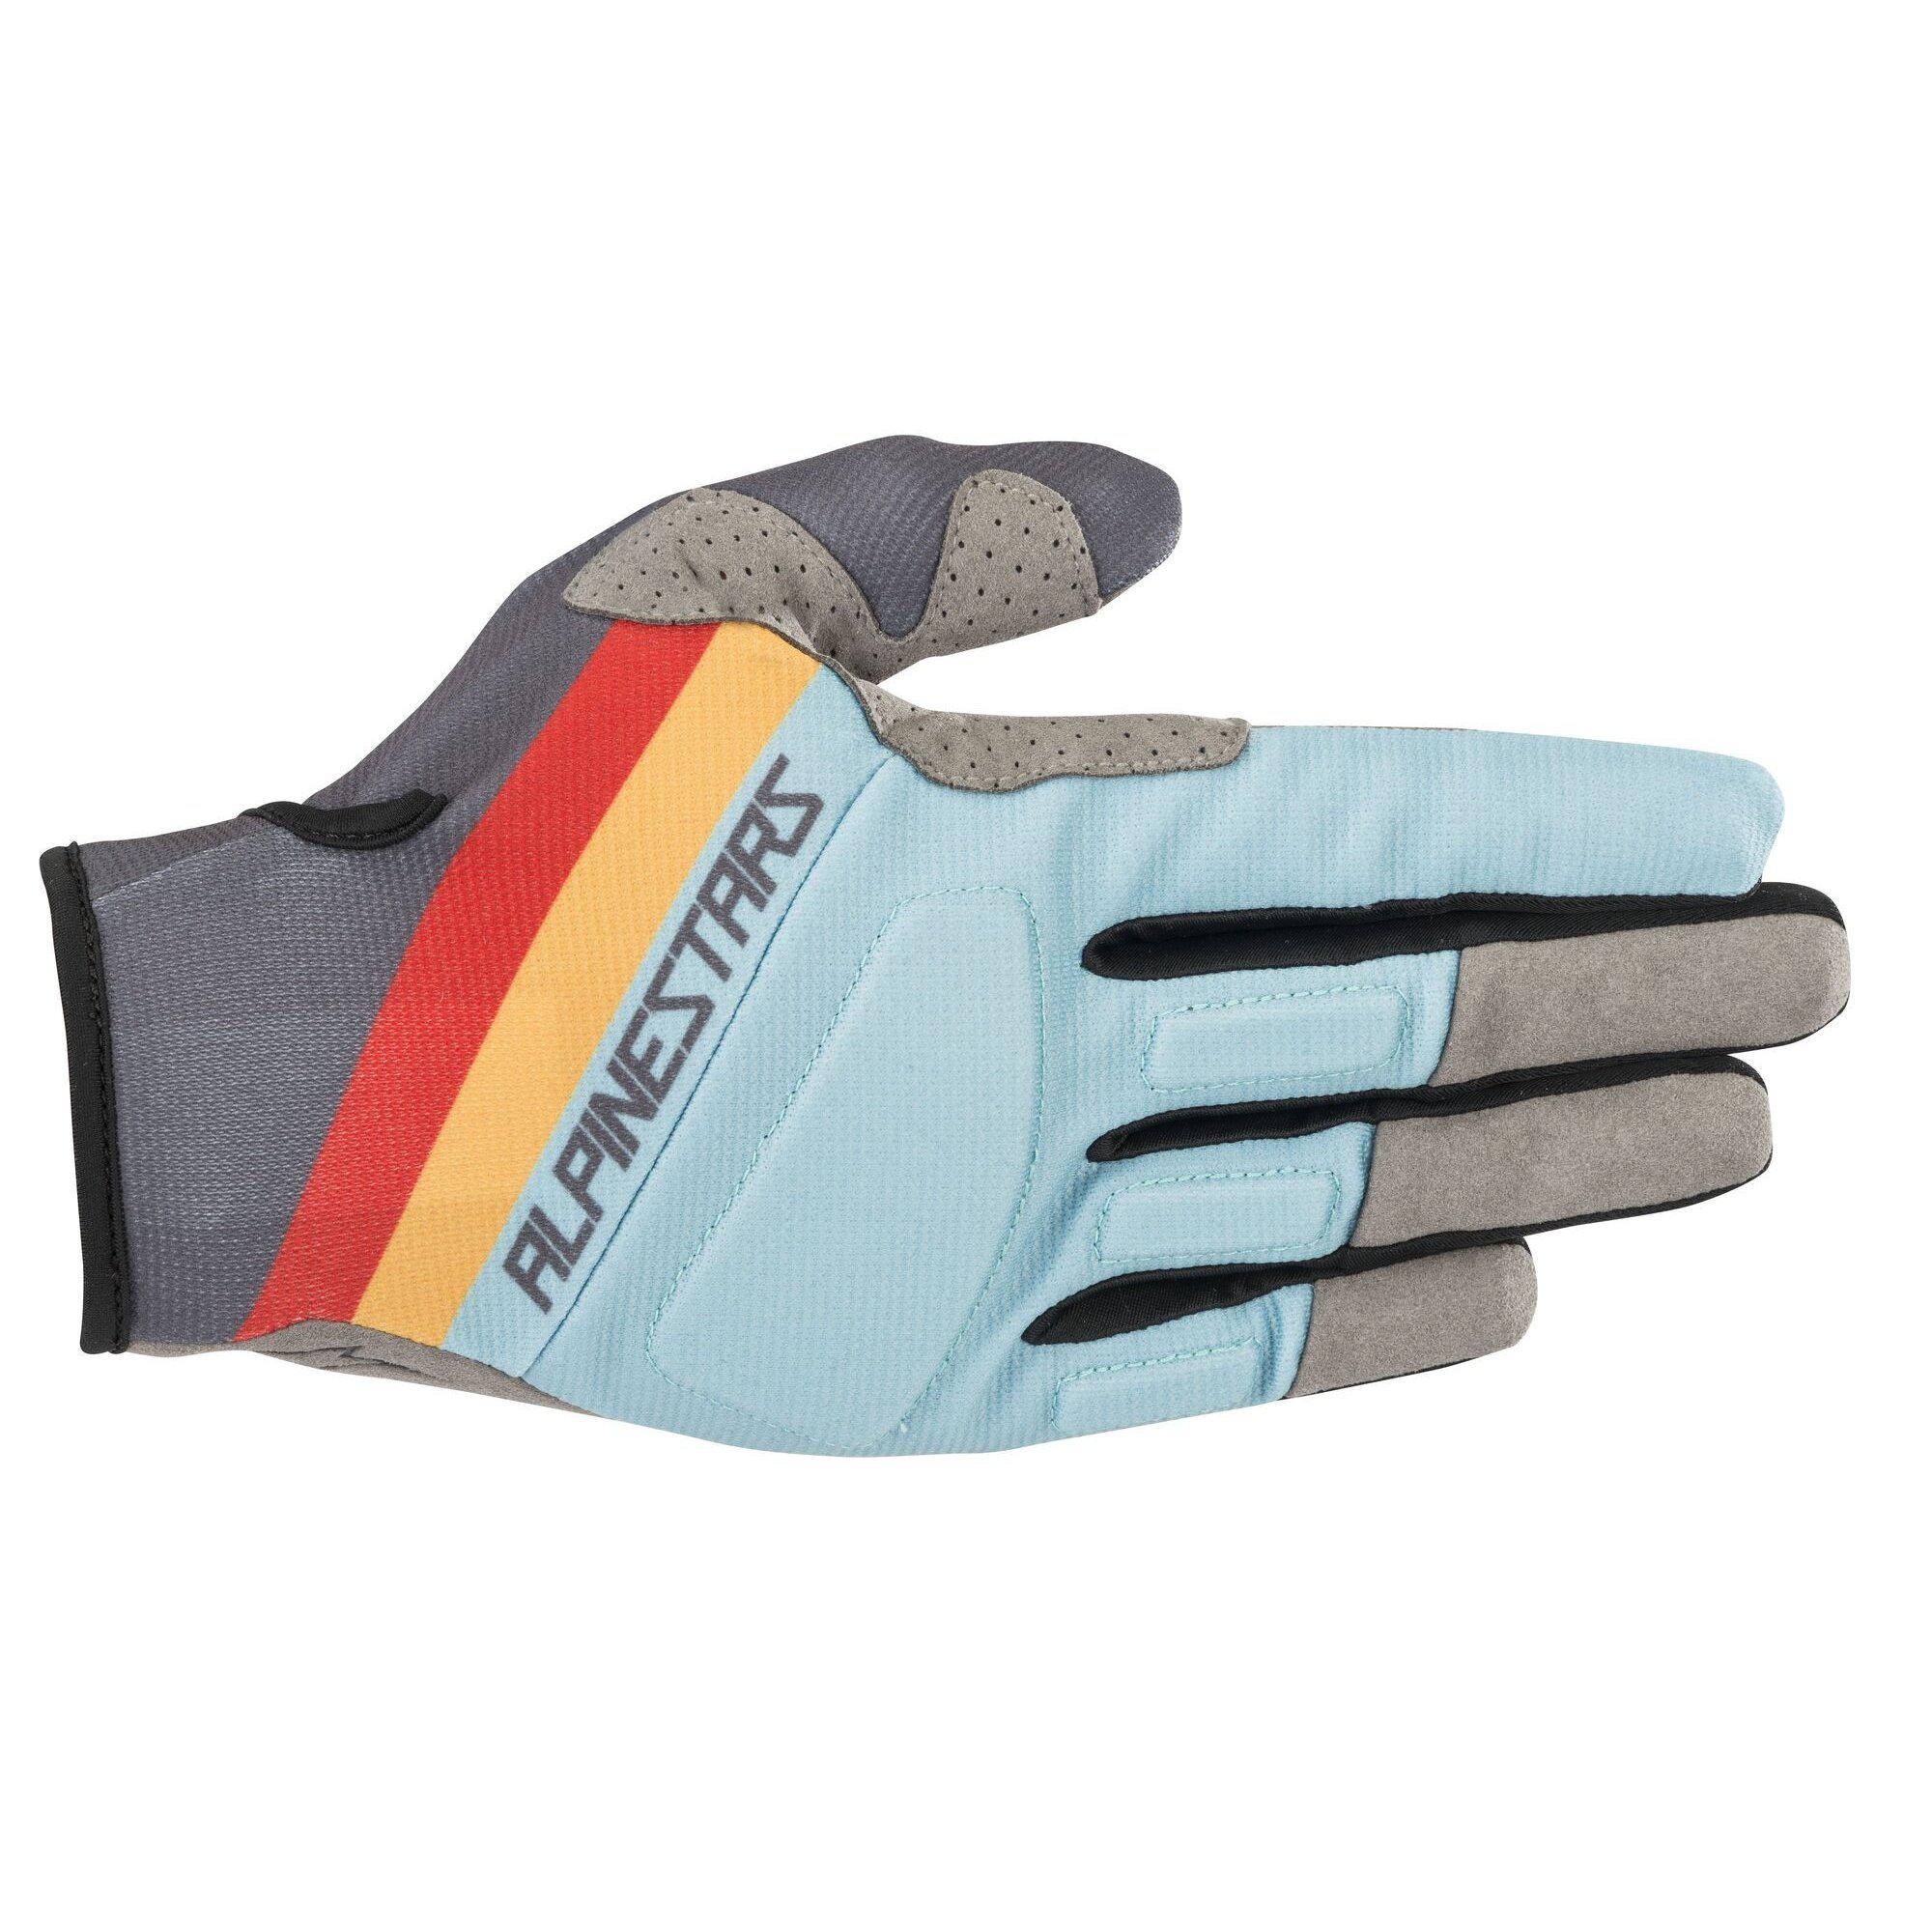 Aspen Pro Gloves